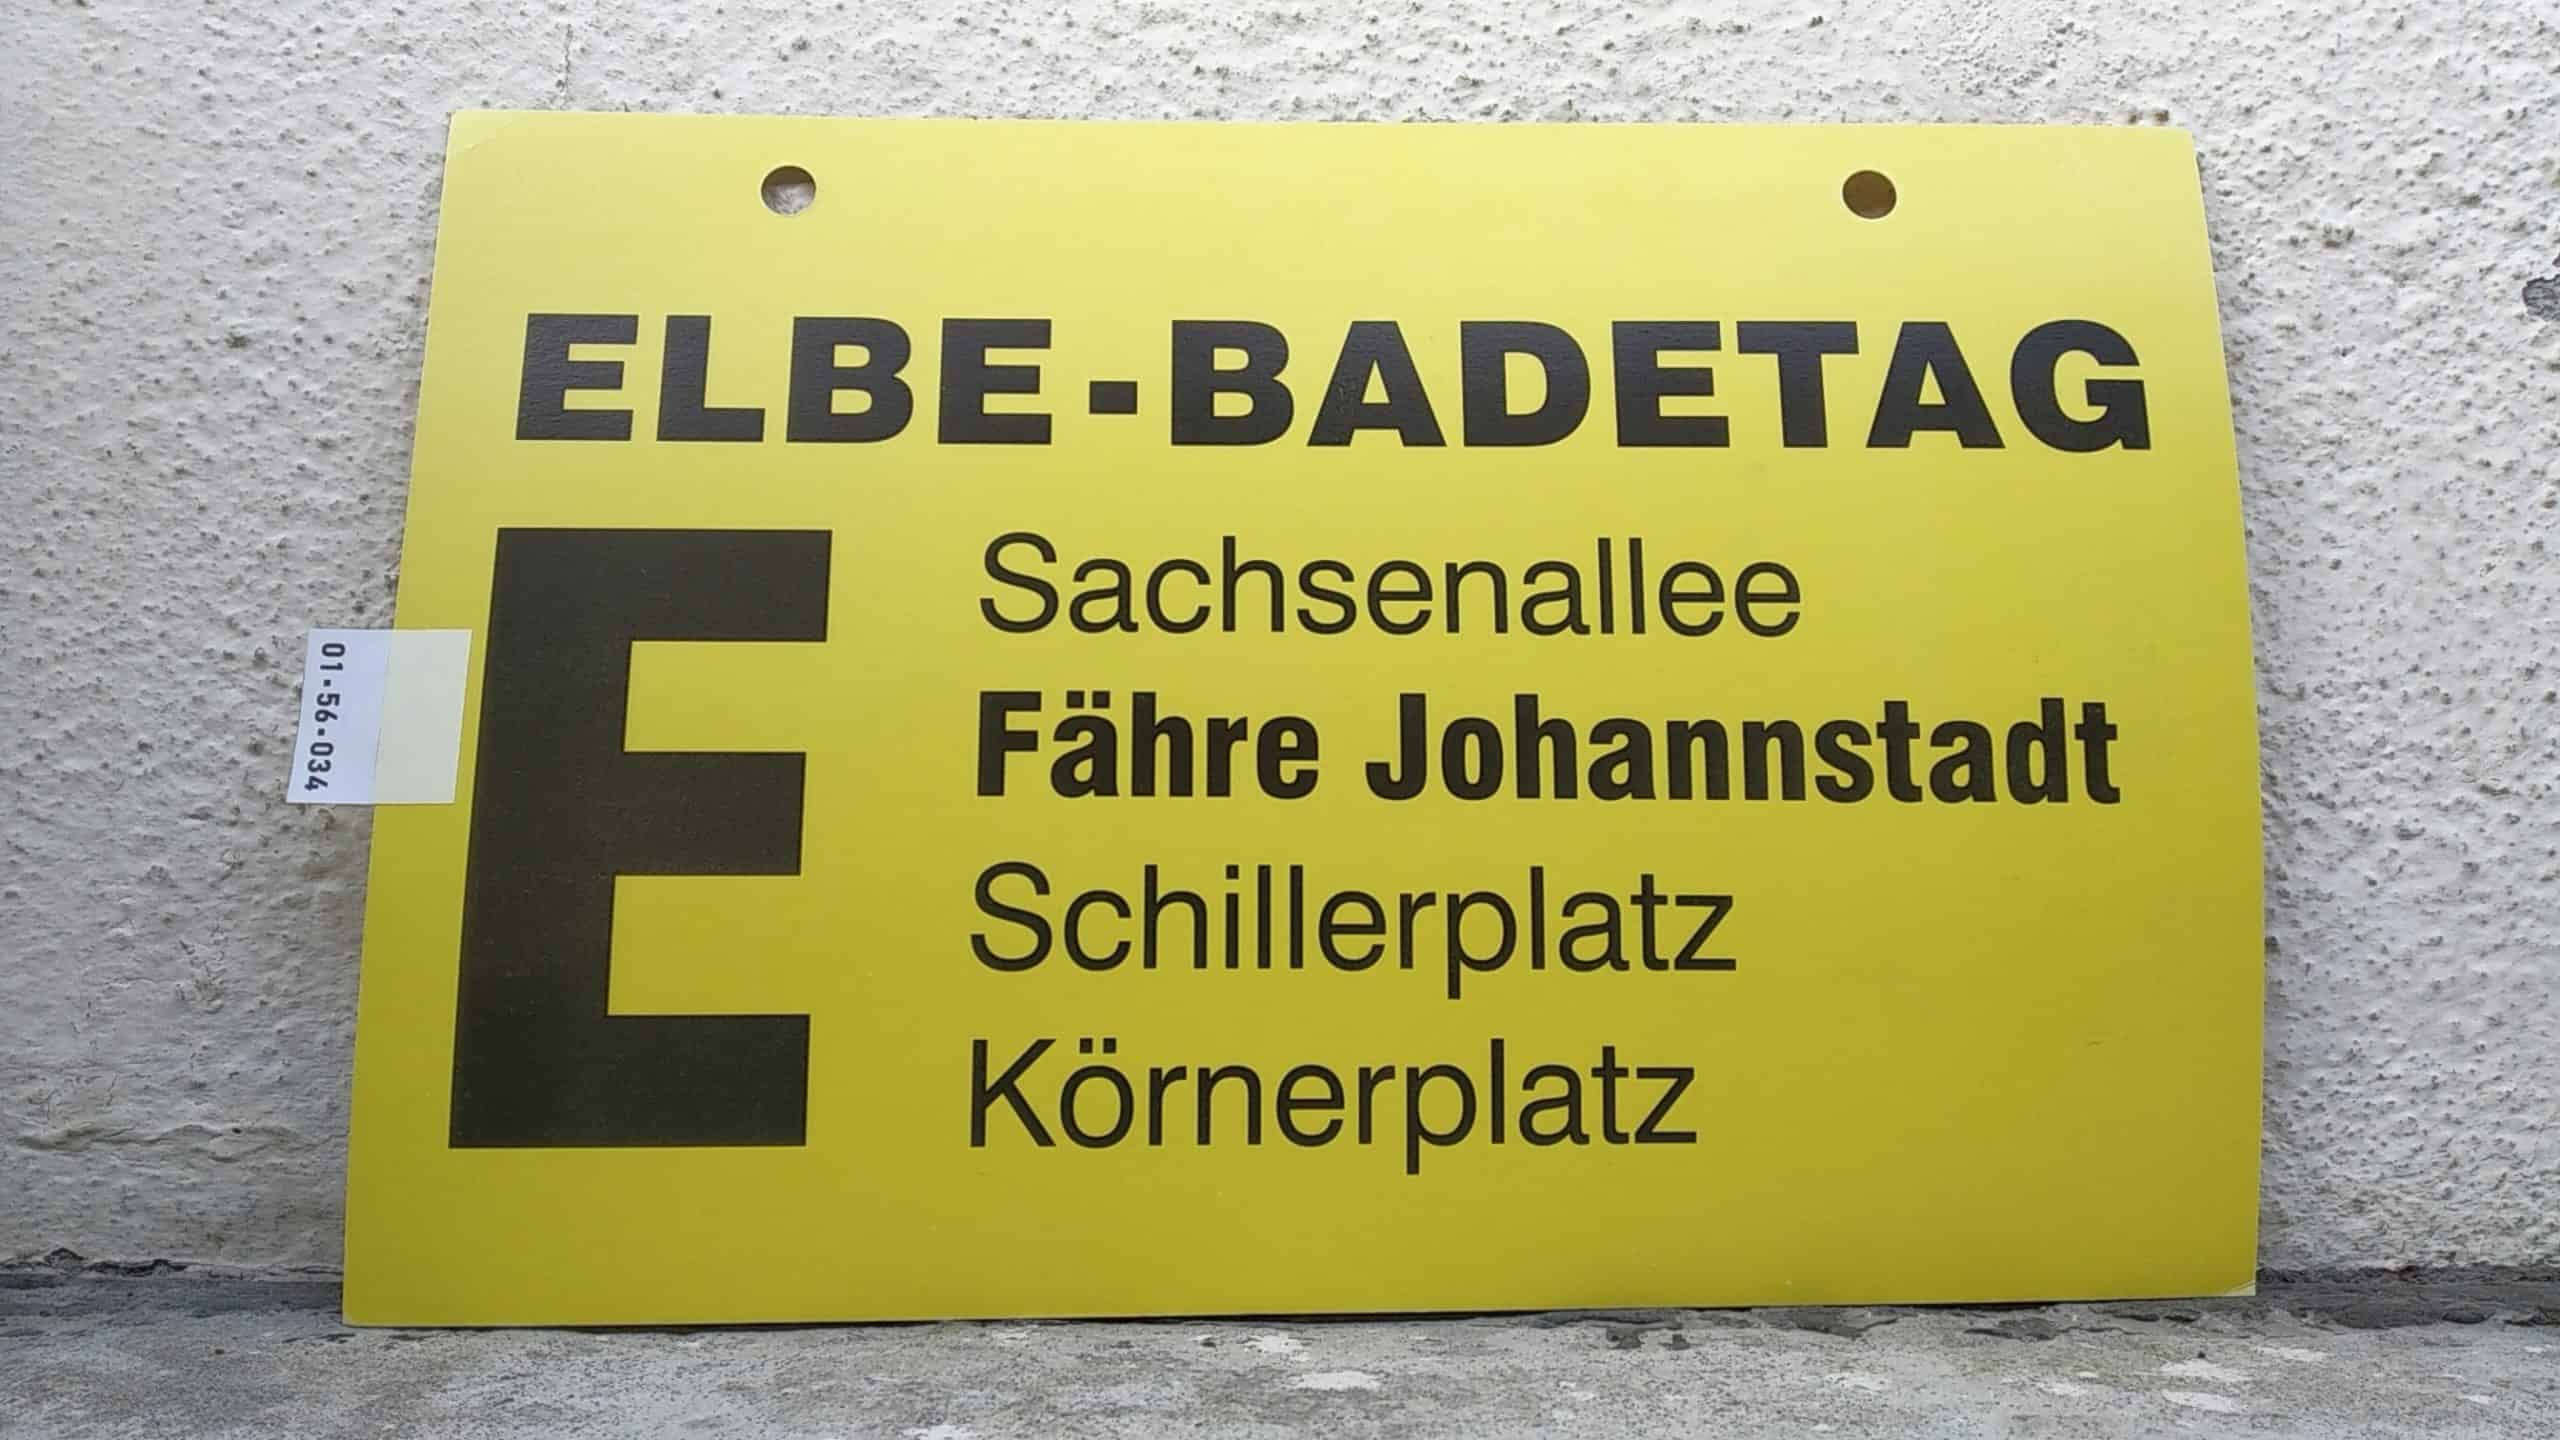 Ein seltenes Bus-Linienschild aus Dresden, anläßlich ELBE-BADETAG E Sachsenallee - Körnerplatz